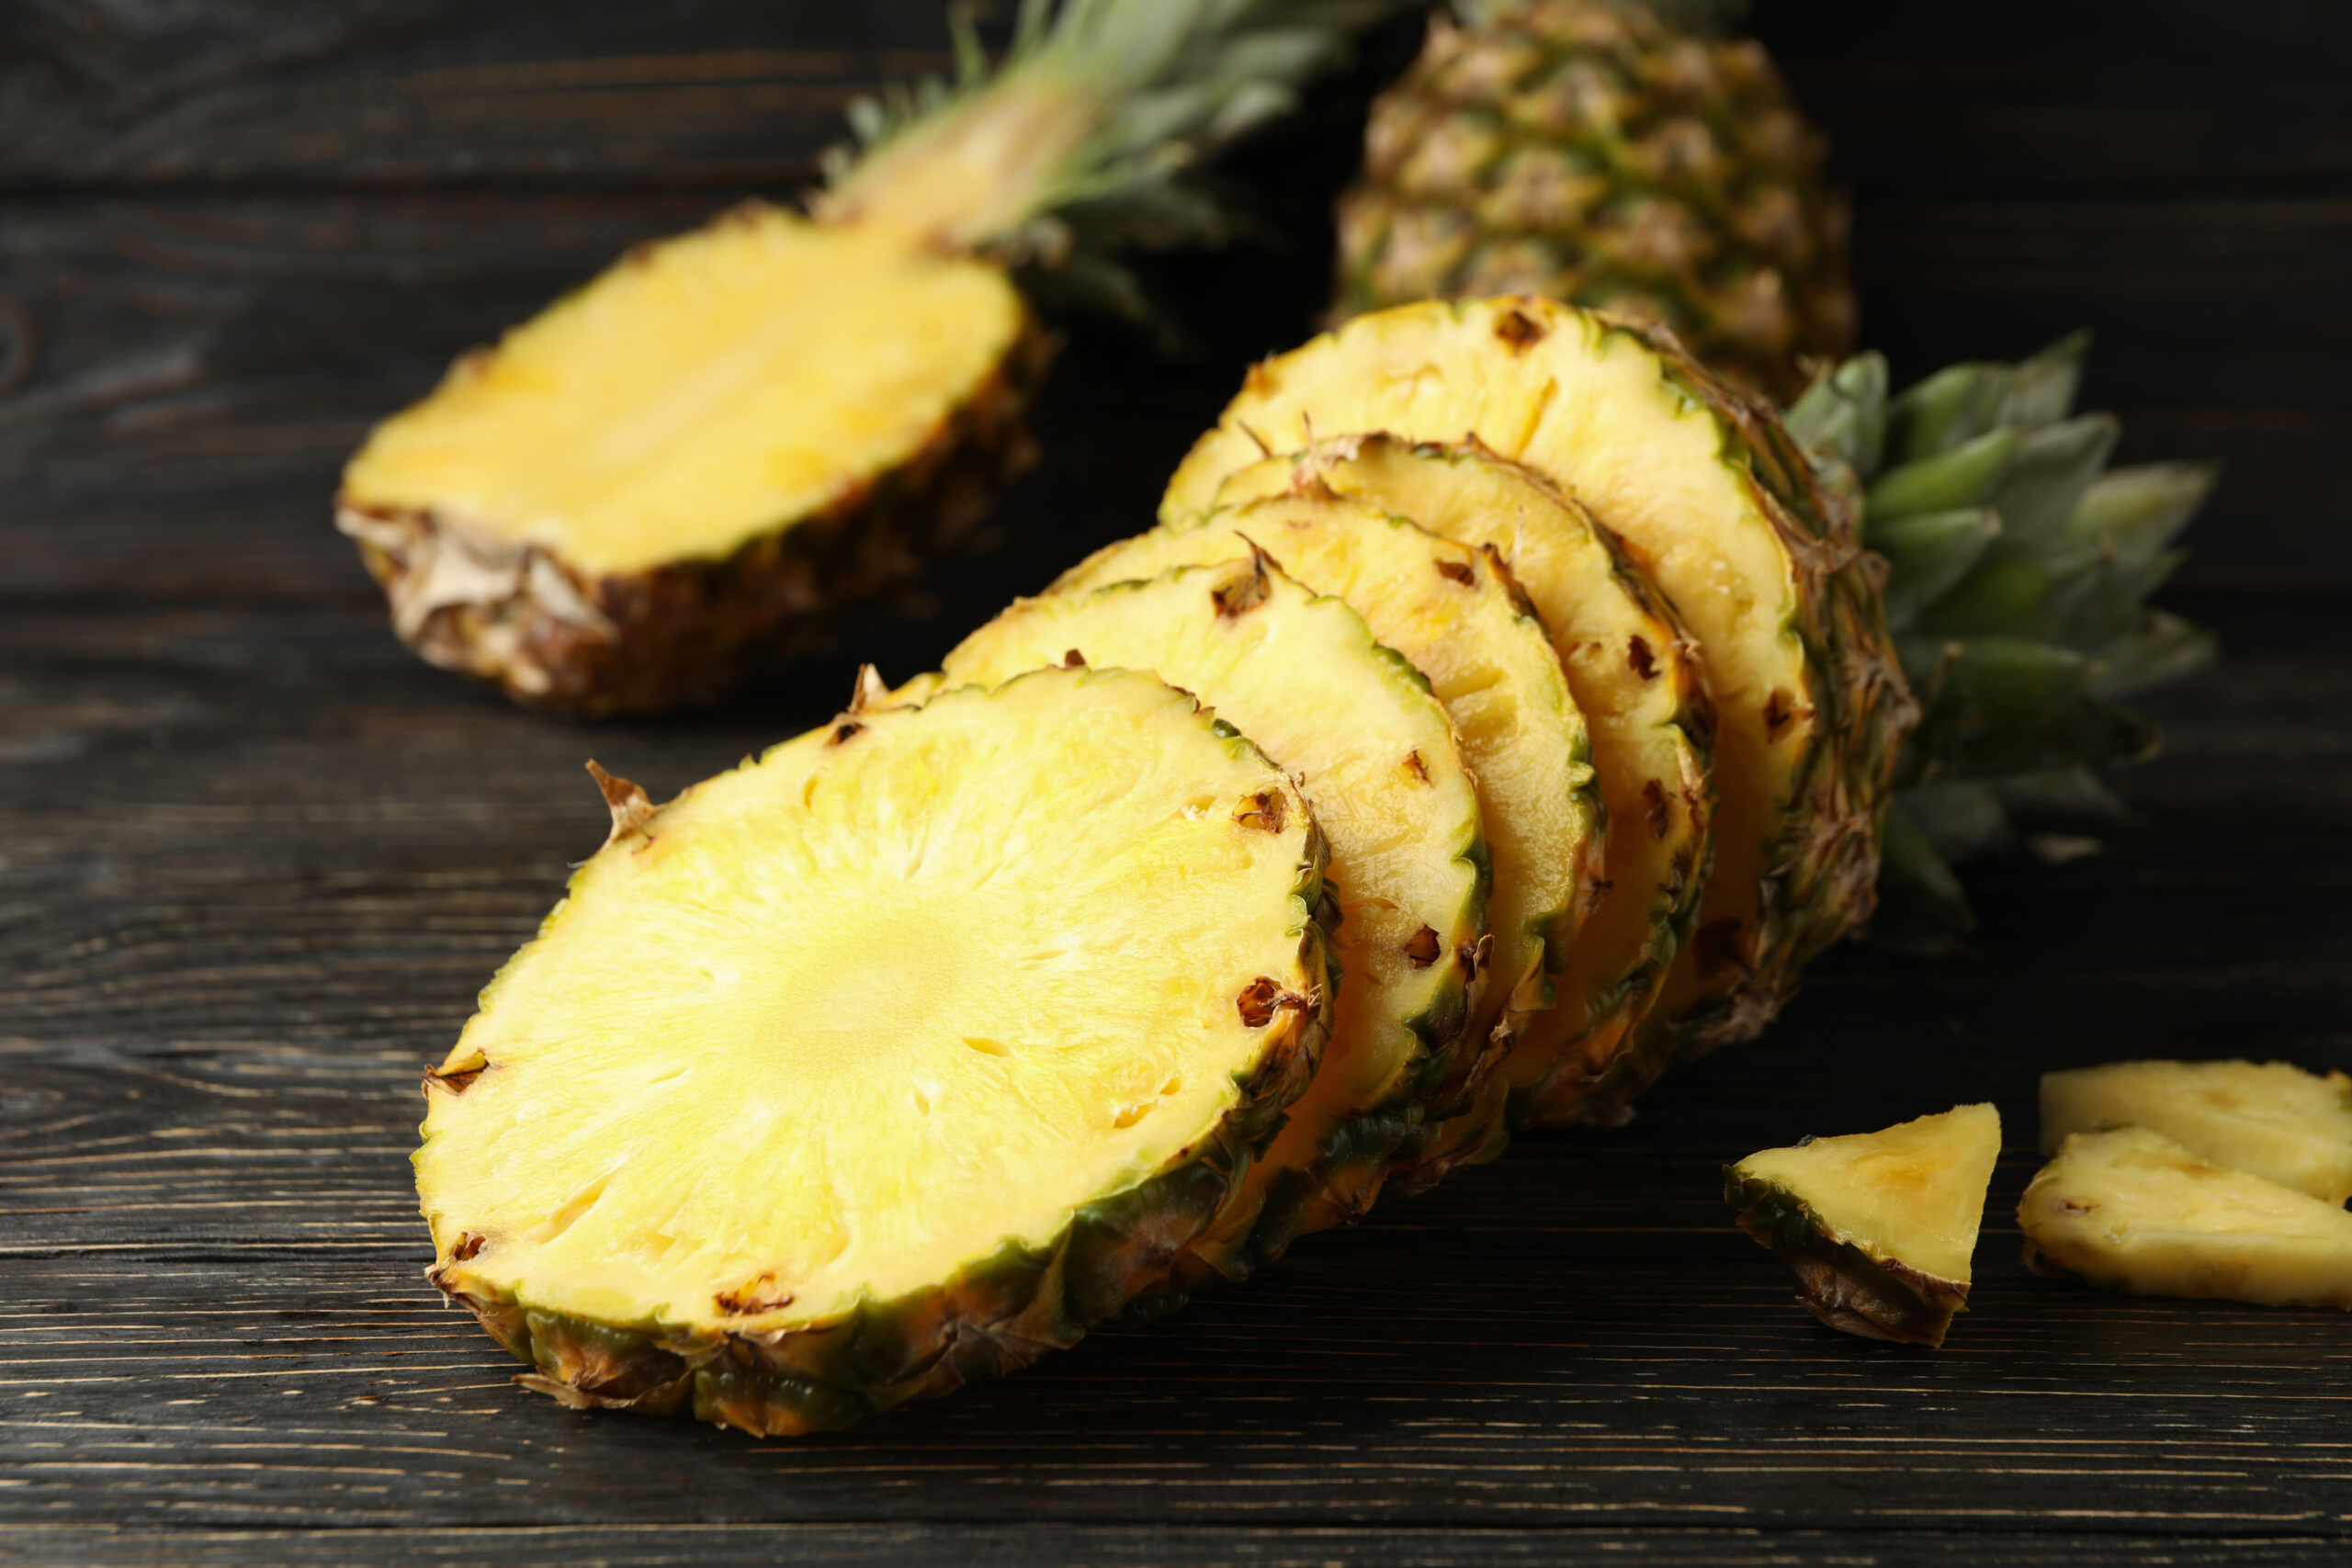 L'ananas, una storia di "frutta a noleggio"